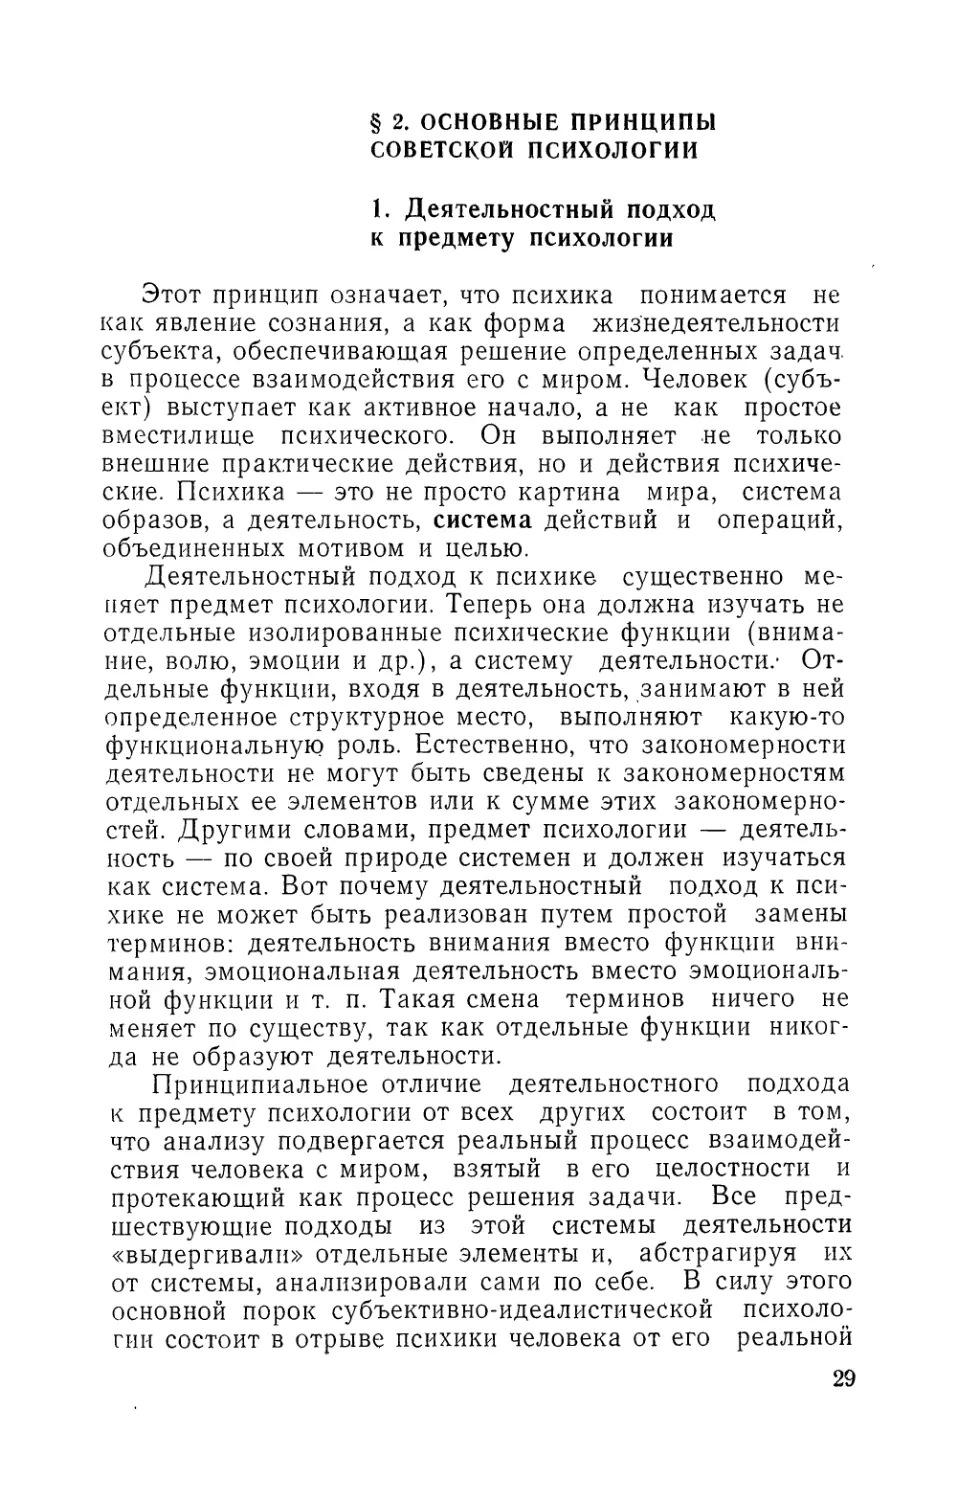 § 2. Основные принципы советской психологии